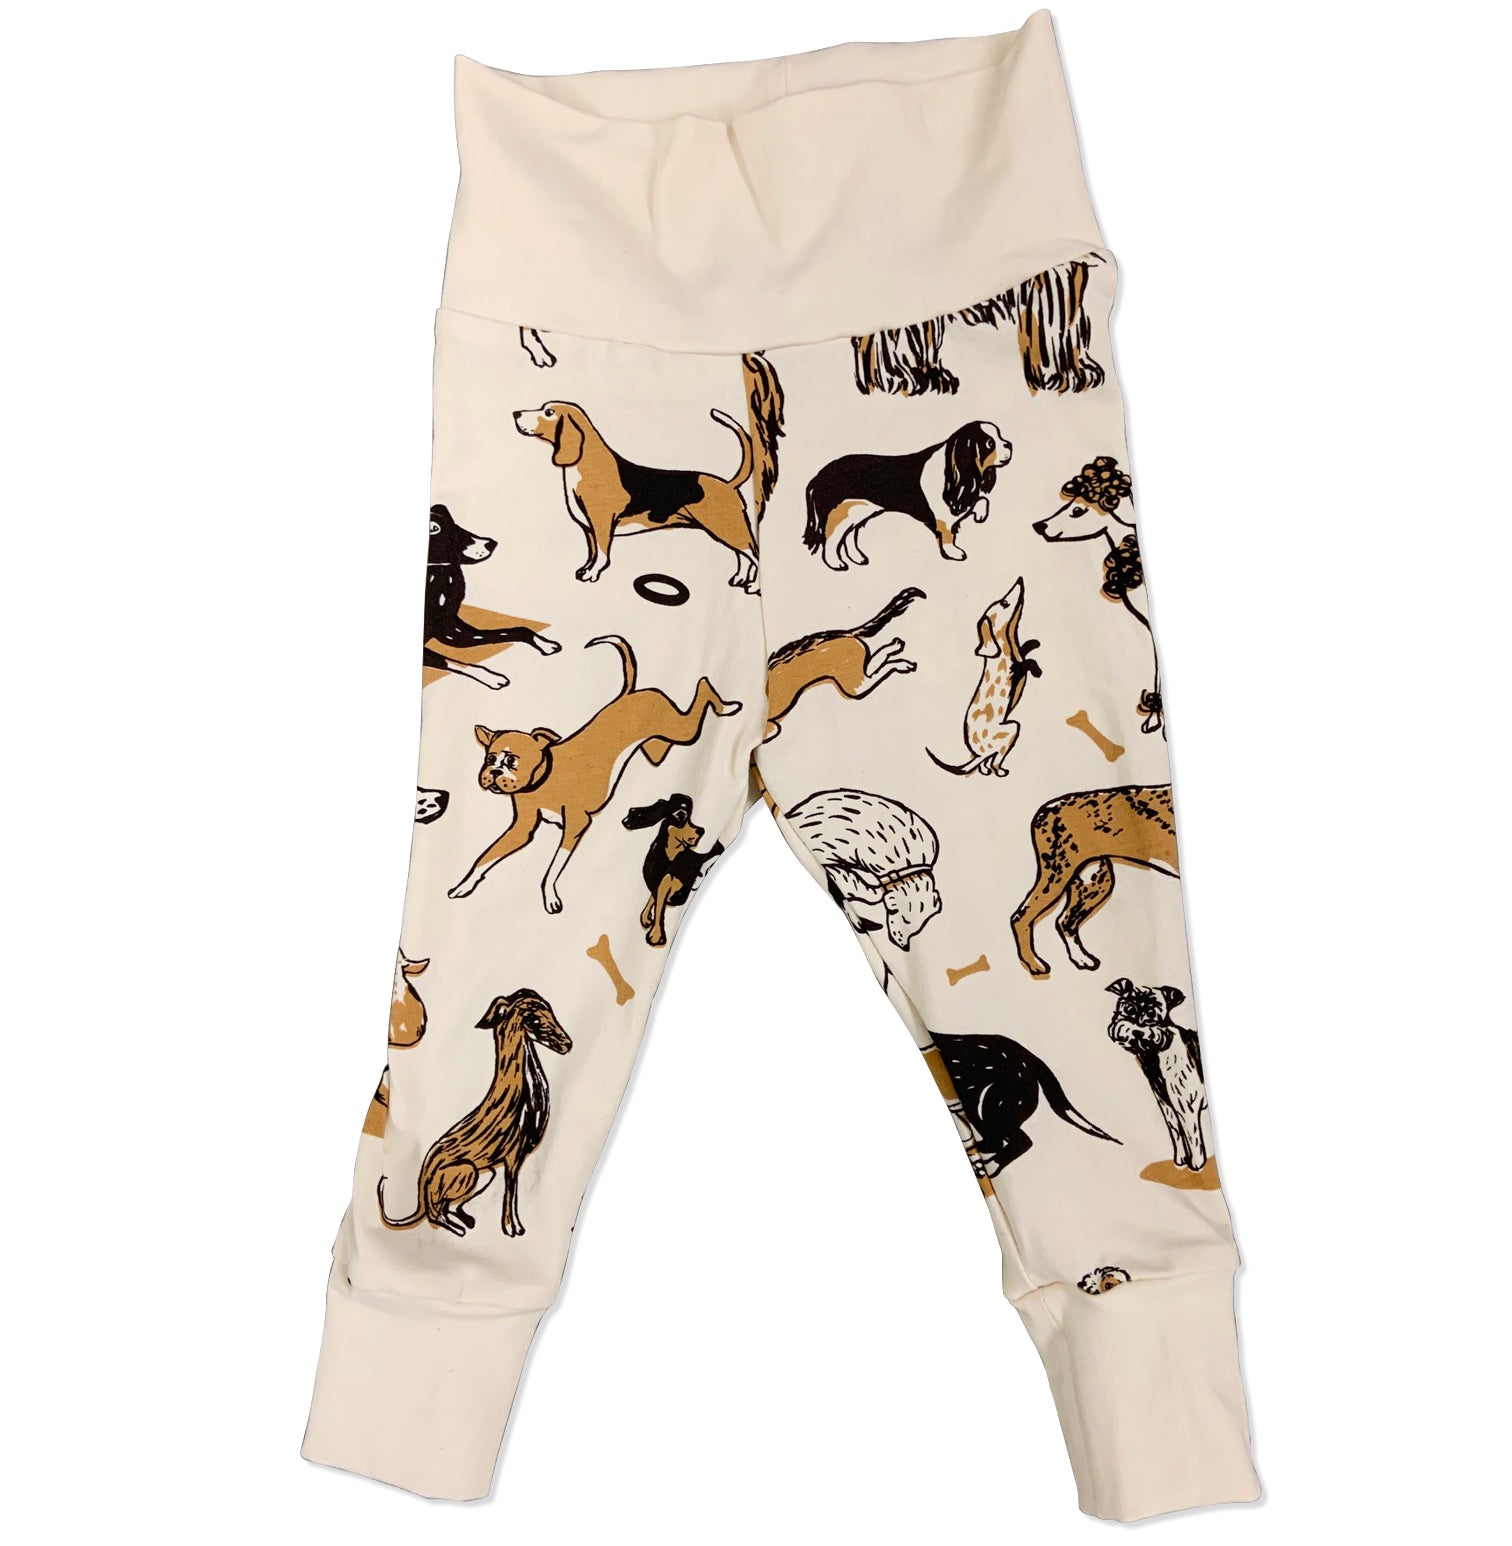 Dog pattern pants. Labrador pants  poodle pants,  corgi pants,  papillon pants,  German shepherd pants,  Chihuahua pants, bulldog pants,   french bulldog pants,  Basset pants,  Greyhound pants,  beagle pants, boxer pants, Name a dog you'll find it on that pants.  100% organic cotton pants.